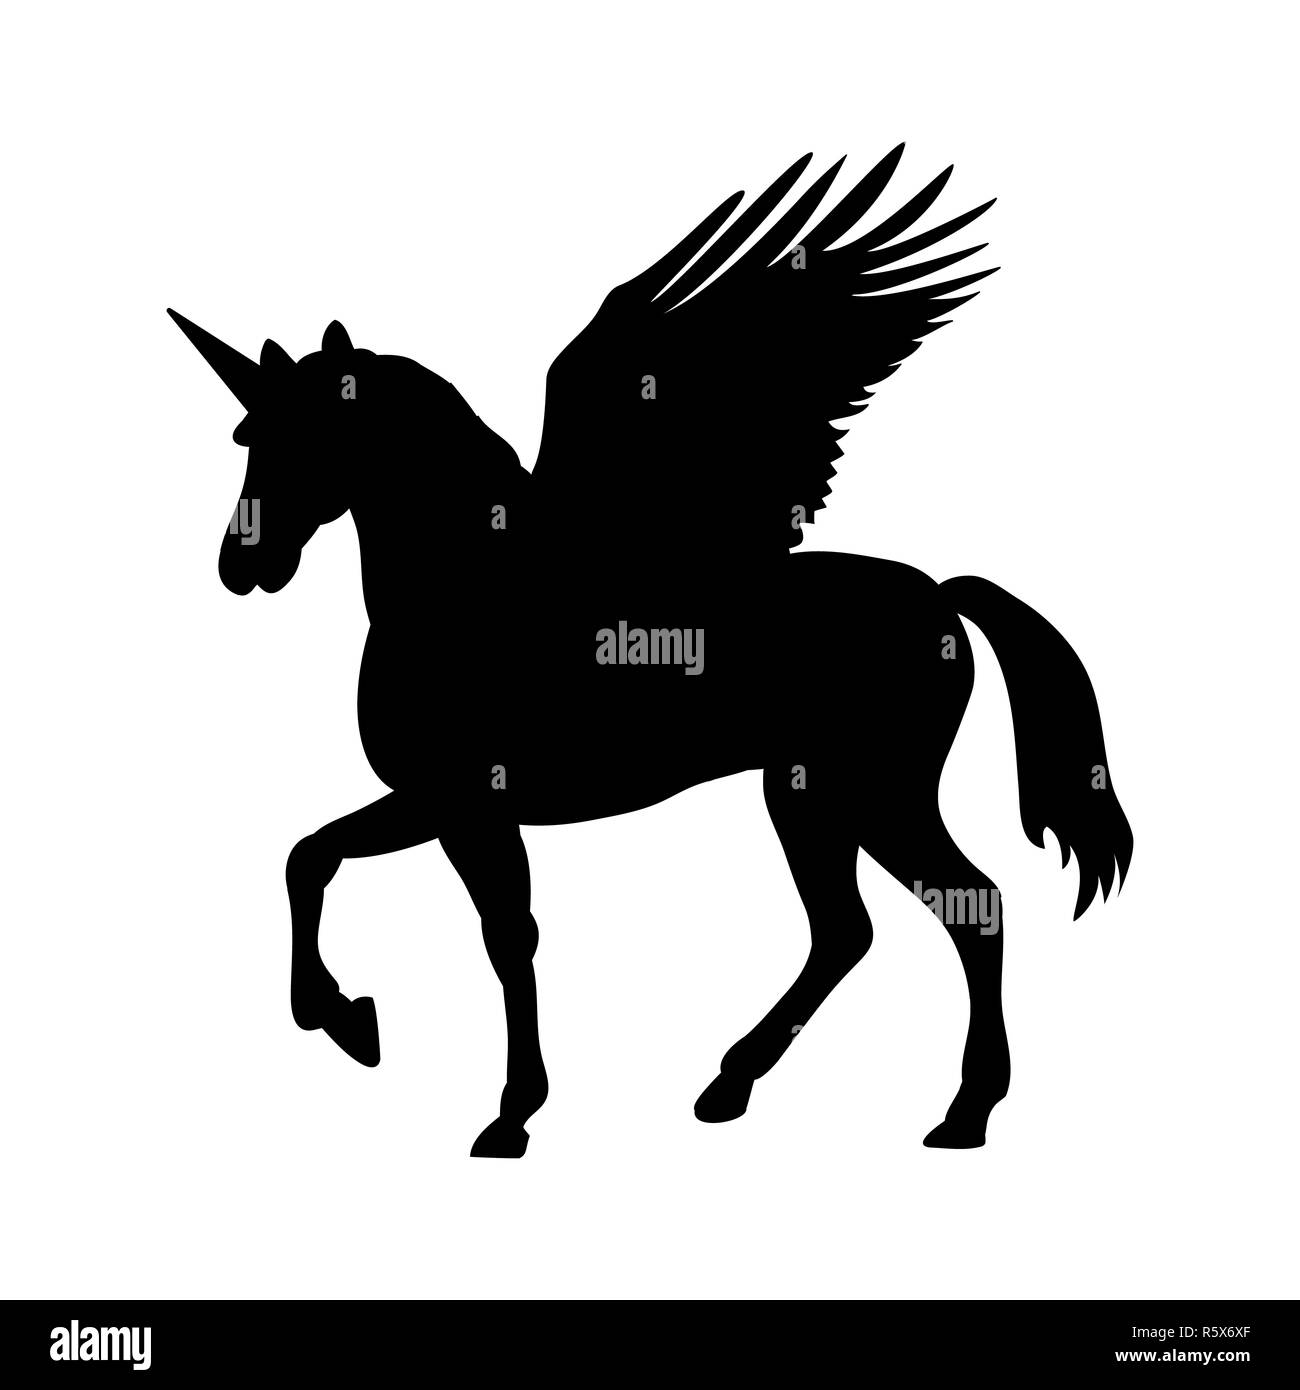 Pegasus Unicorn silhouette mythology symbol fantasy tale. Stock Photo